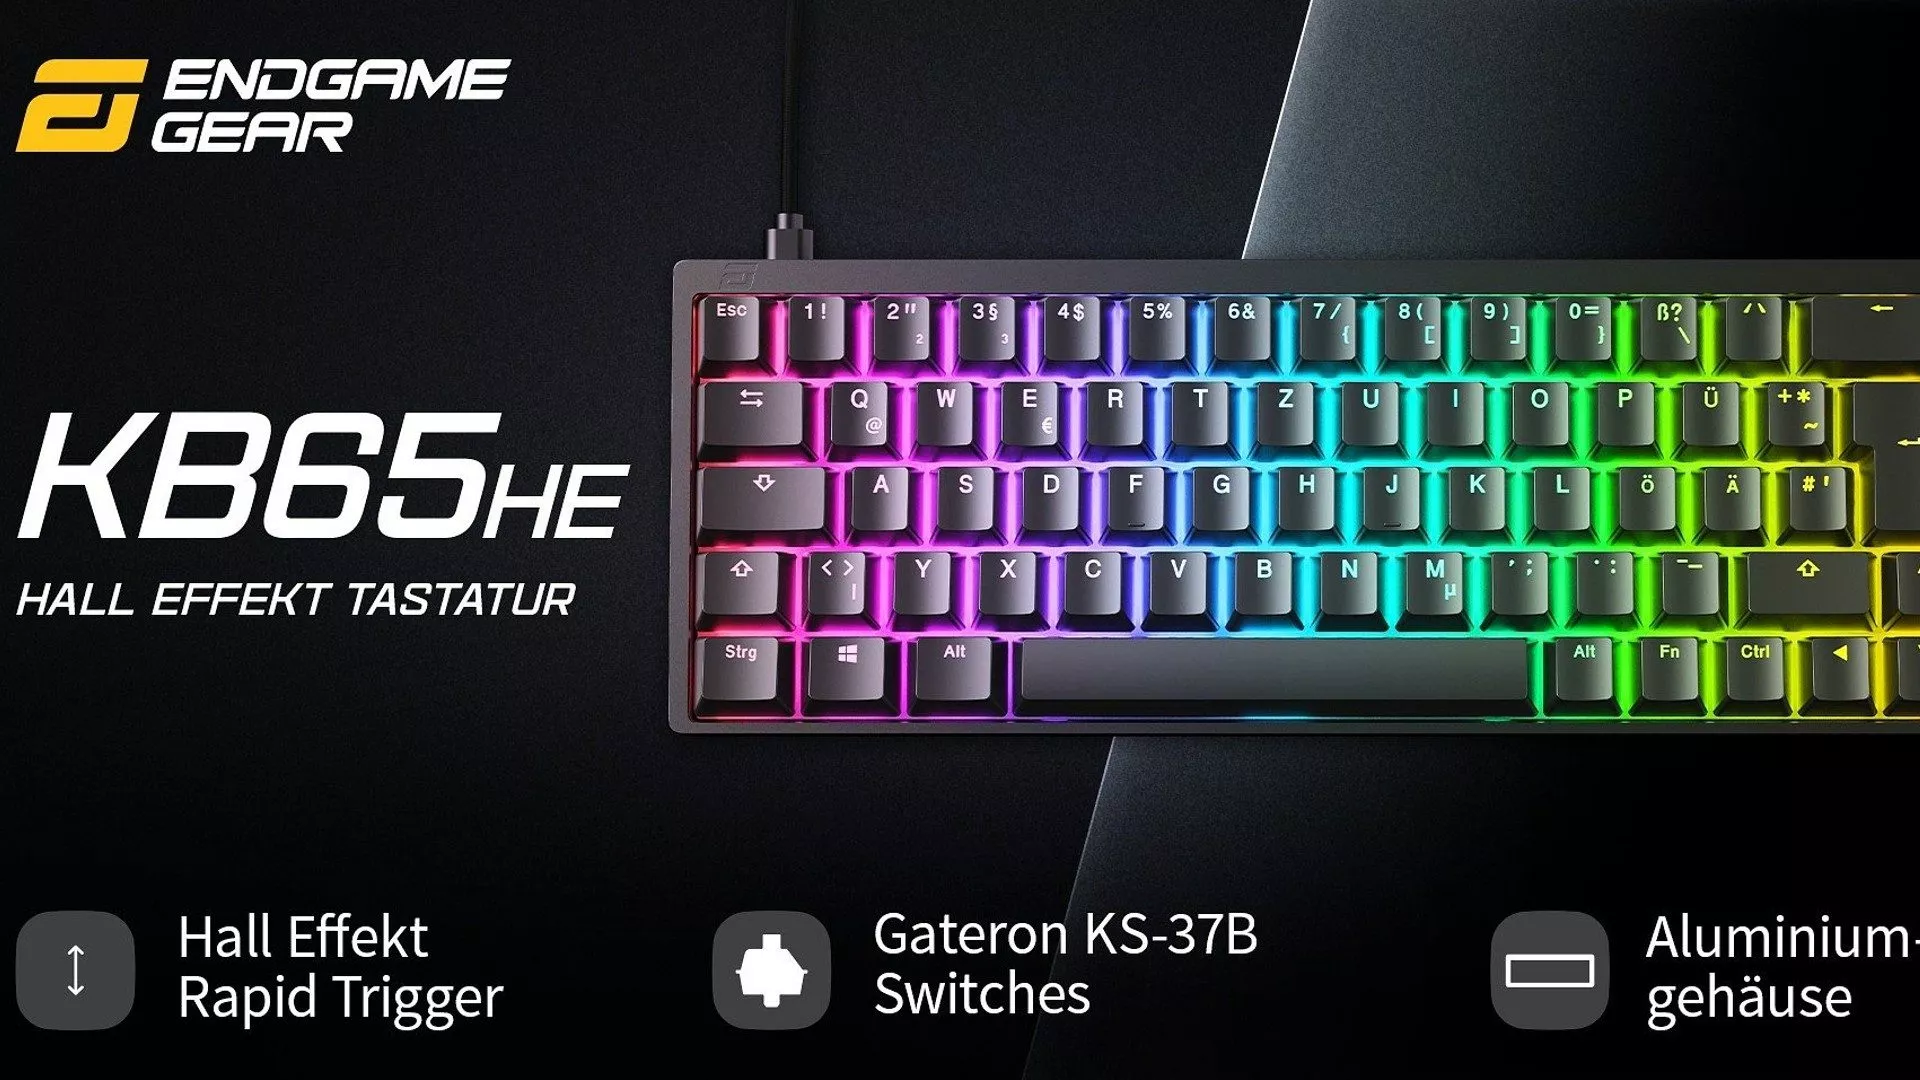 Endgame Gear KB65HE Tastatur mit beleuchteten Tasten